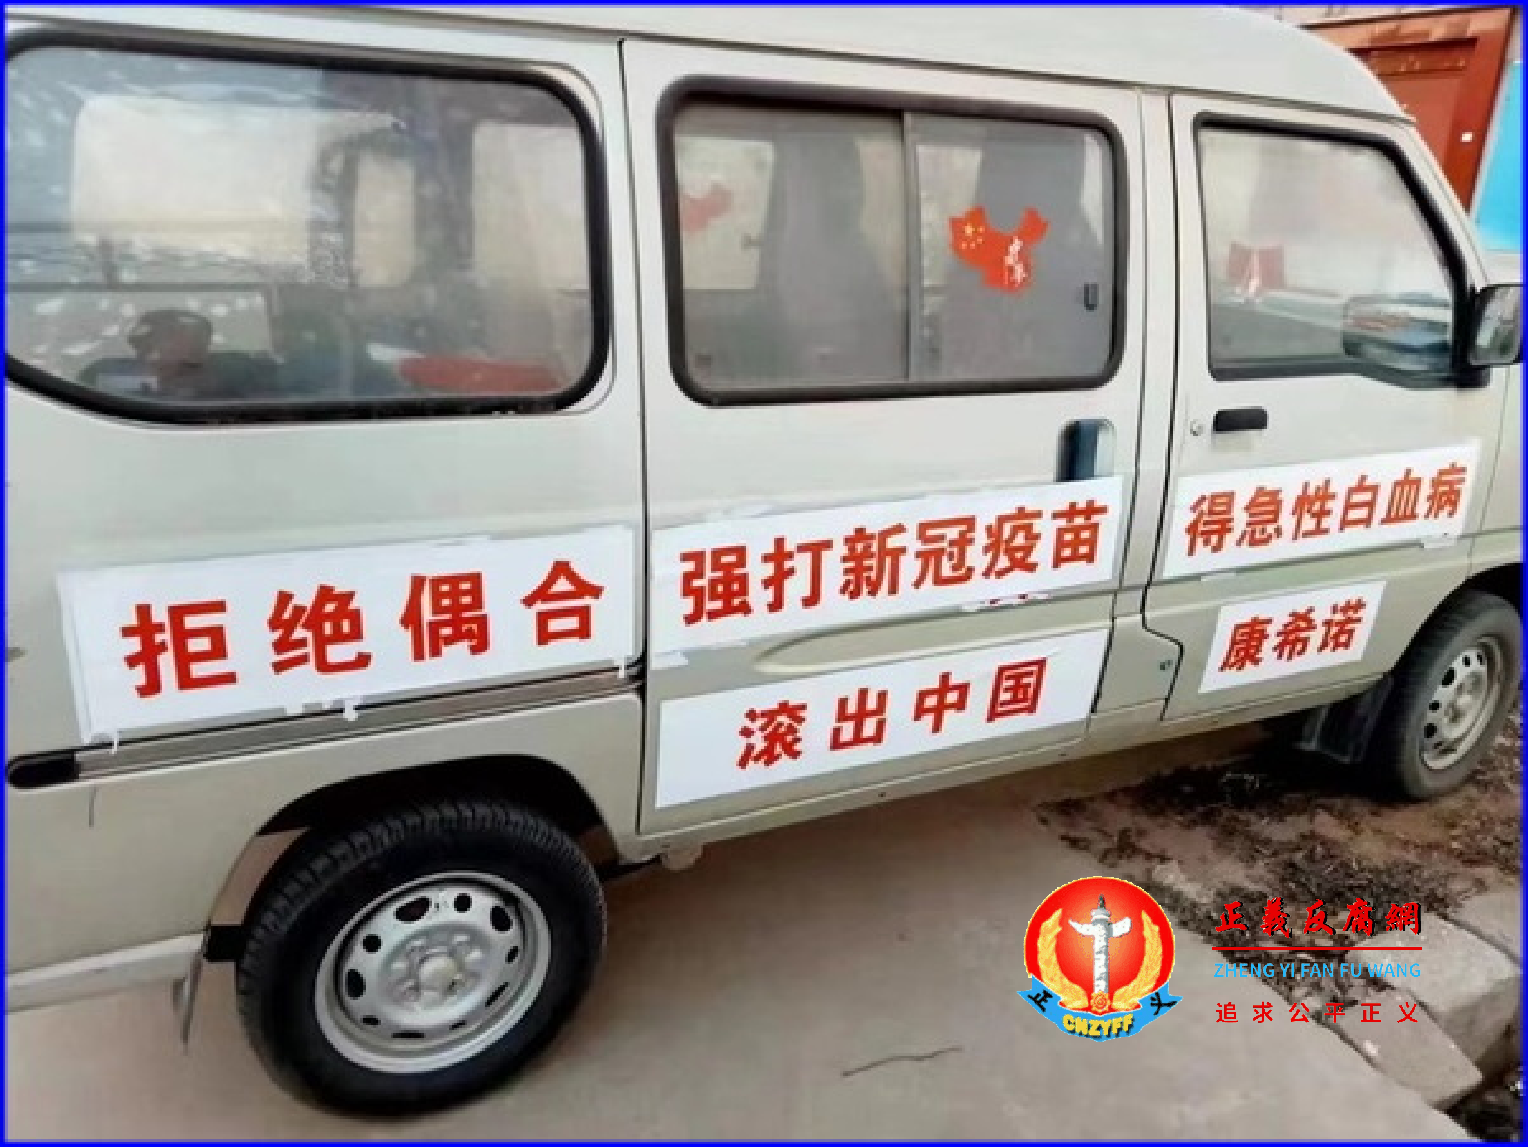 七座小面包车上左侧门写着标语“拒绝偶合、强打新冠疫苗、得急性白血病、滚出中国、康希诺”。.png